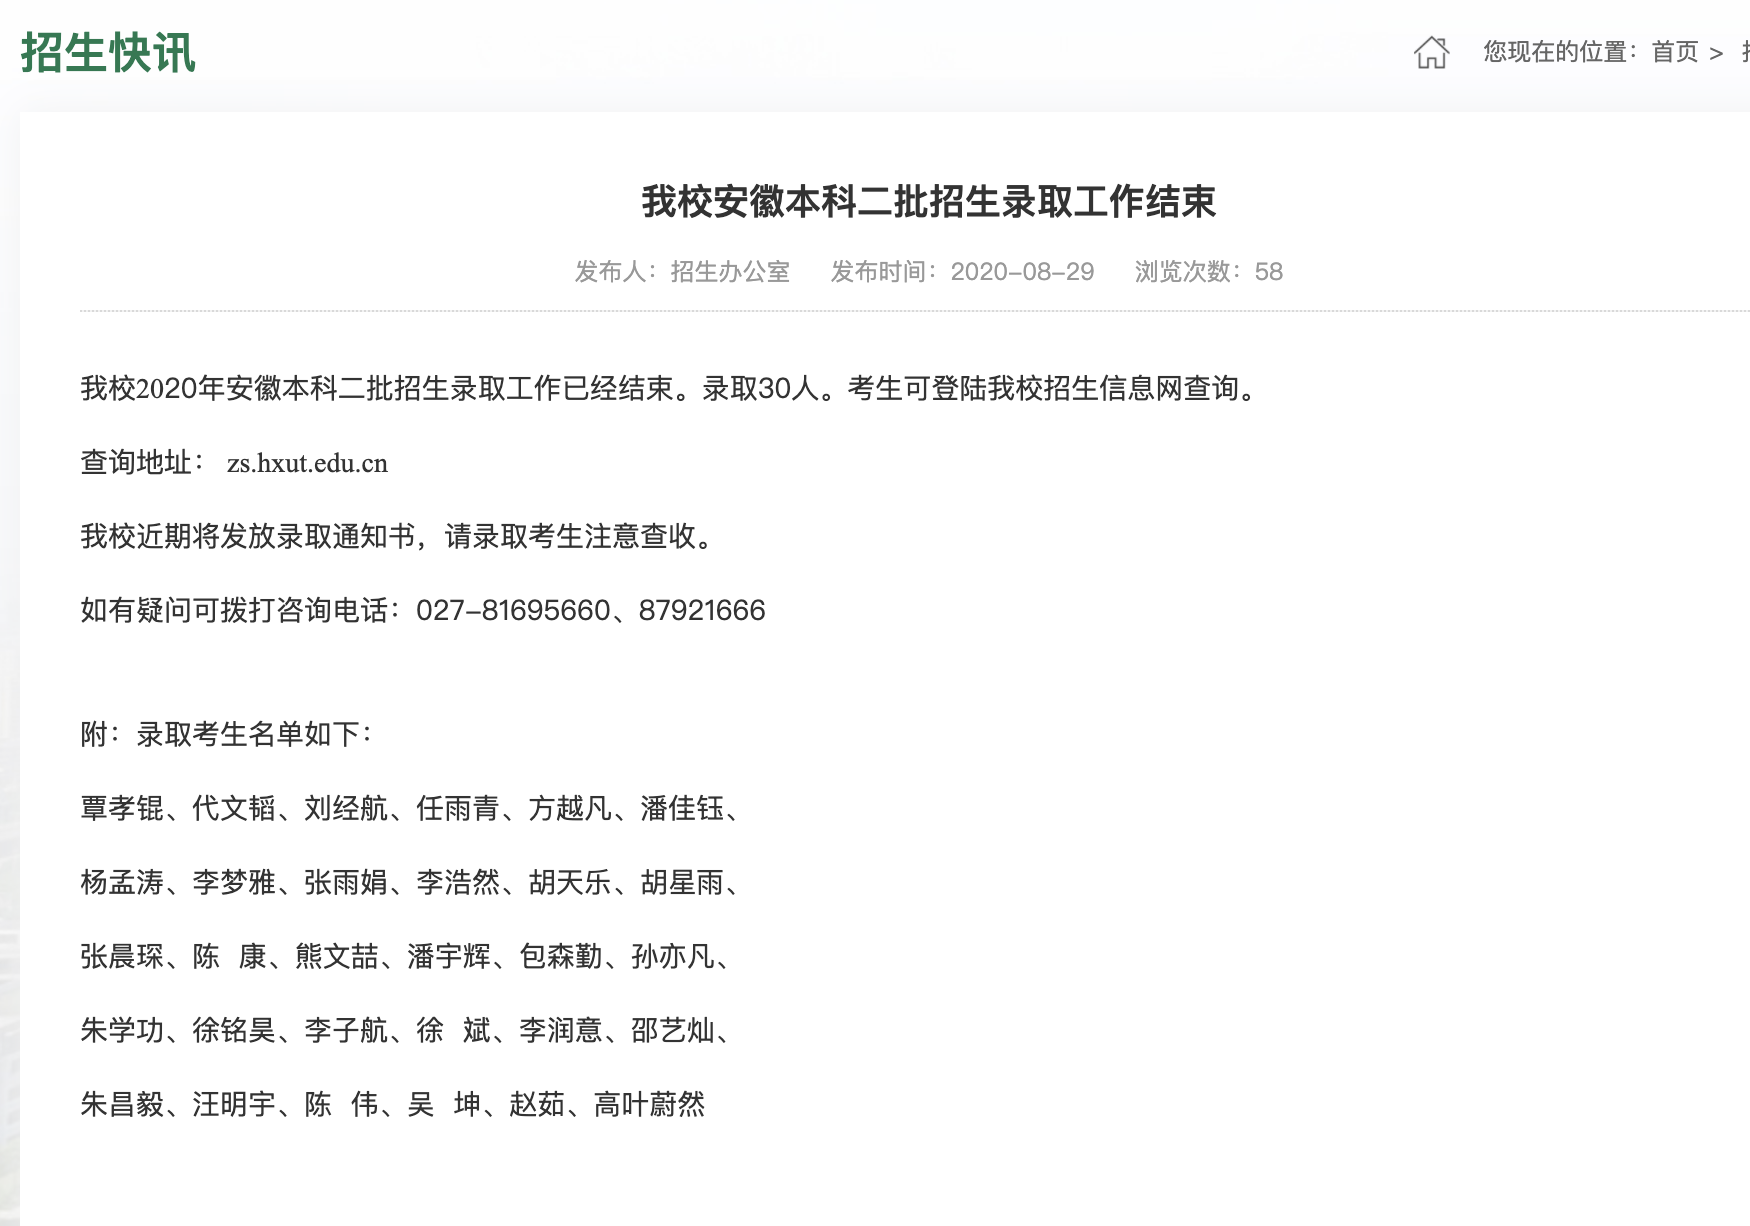 武汉华夏理工学院2020高考安徽本科二批招生录取名单